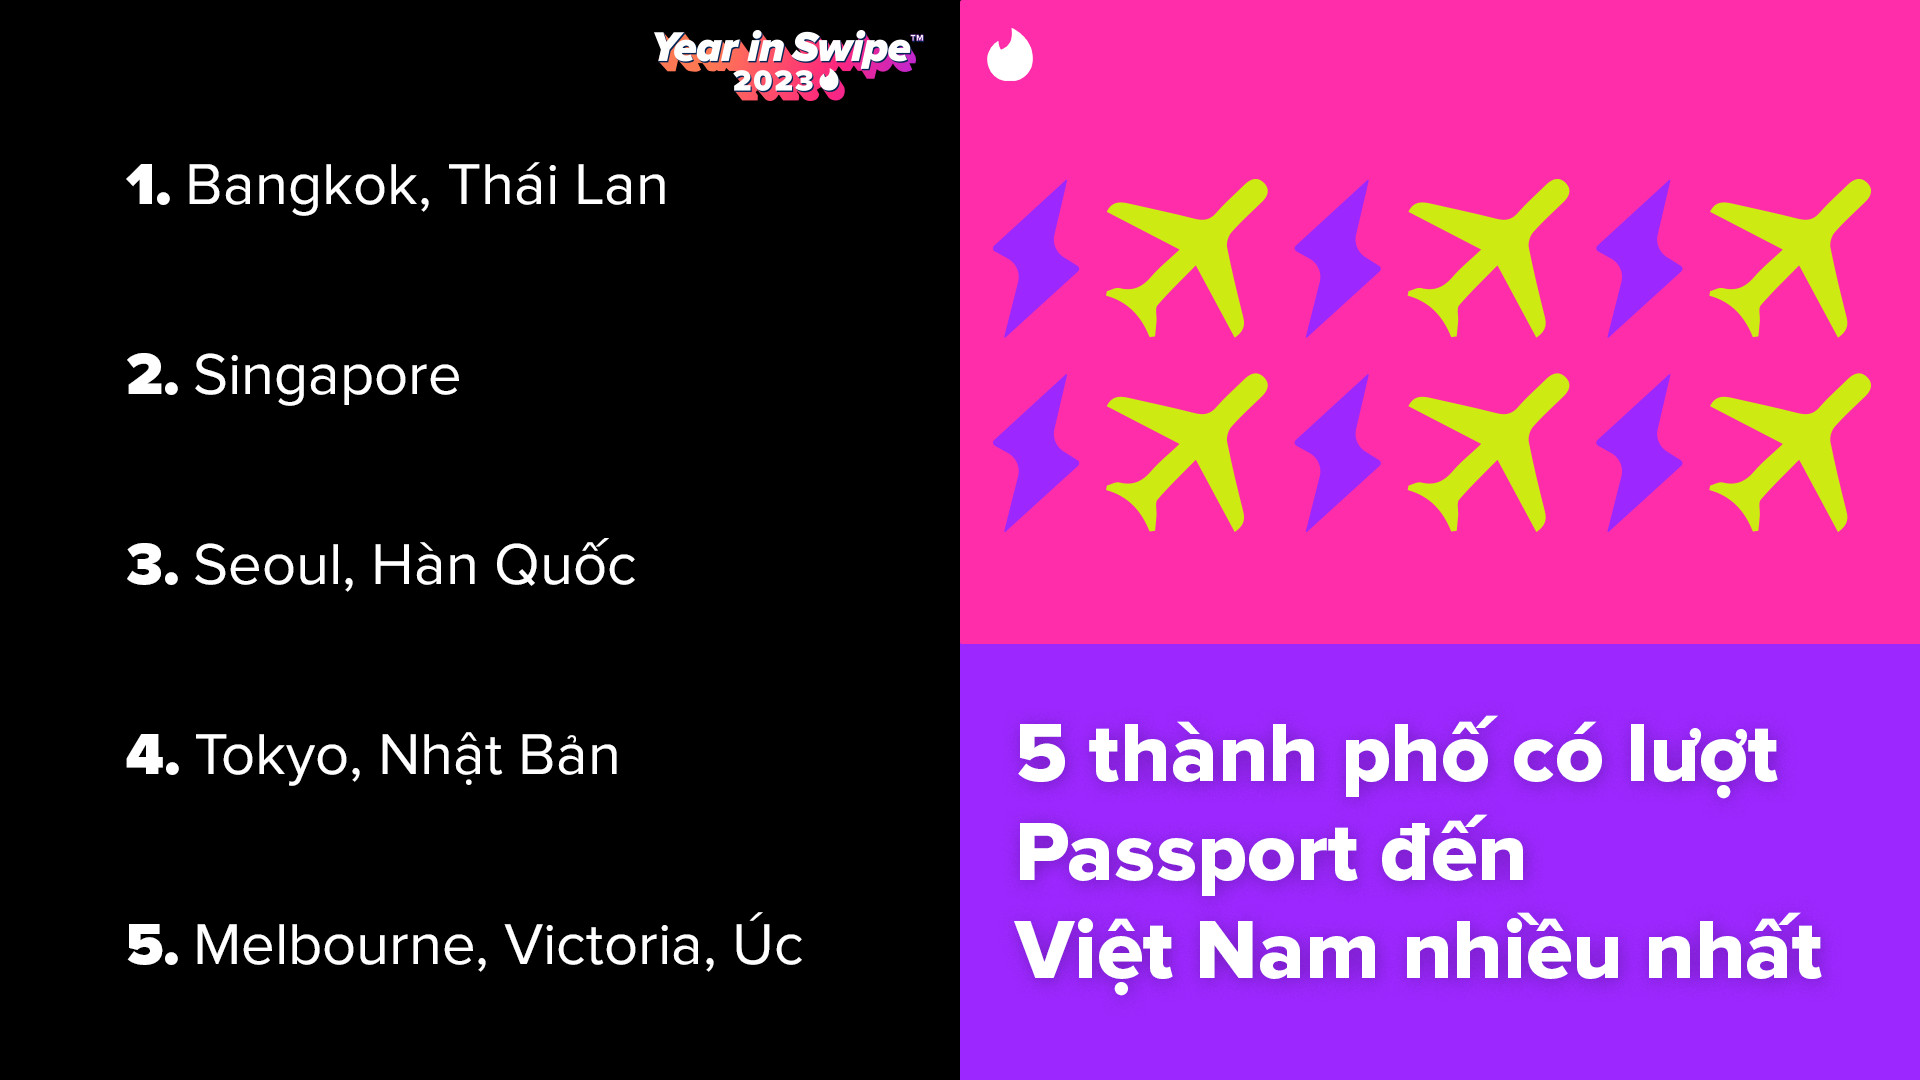 Top thành phố Passport đến Việt Nam